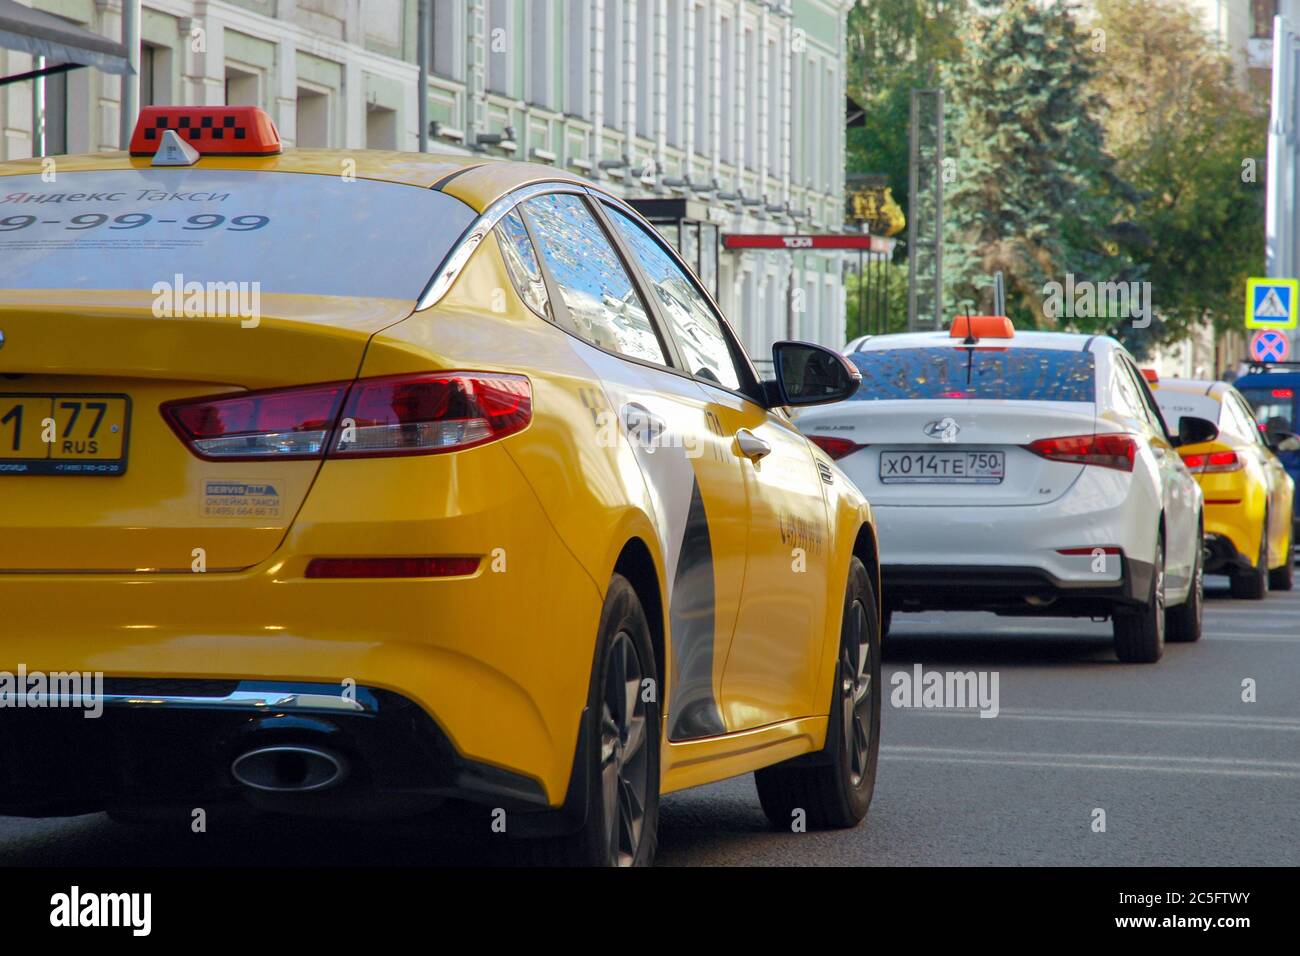 28/08/2019 Stau in Moskau, viele gelbe Taxis in einer Reihe, Rückansicht. Stockfoto